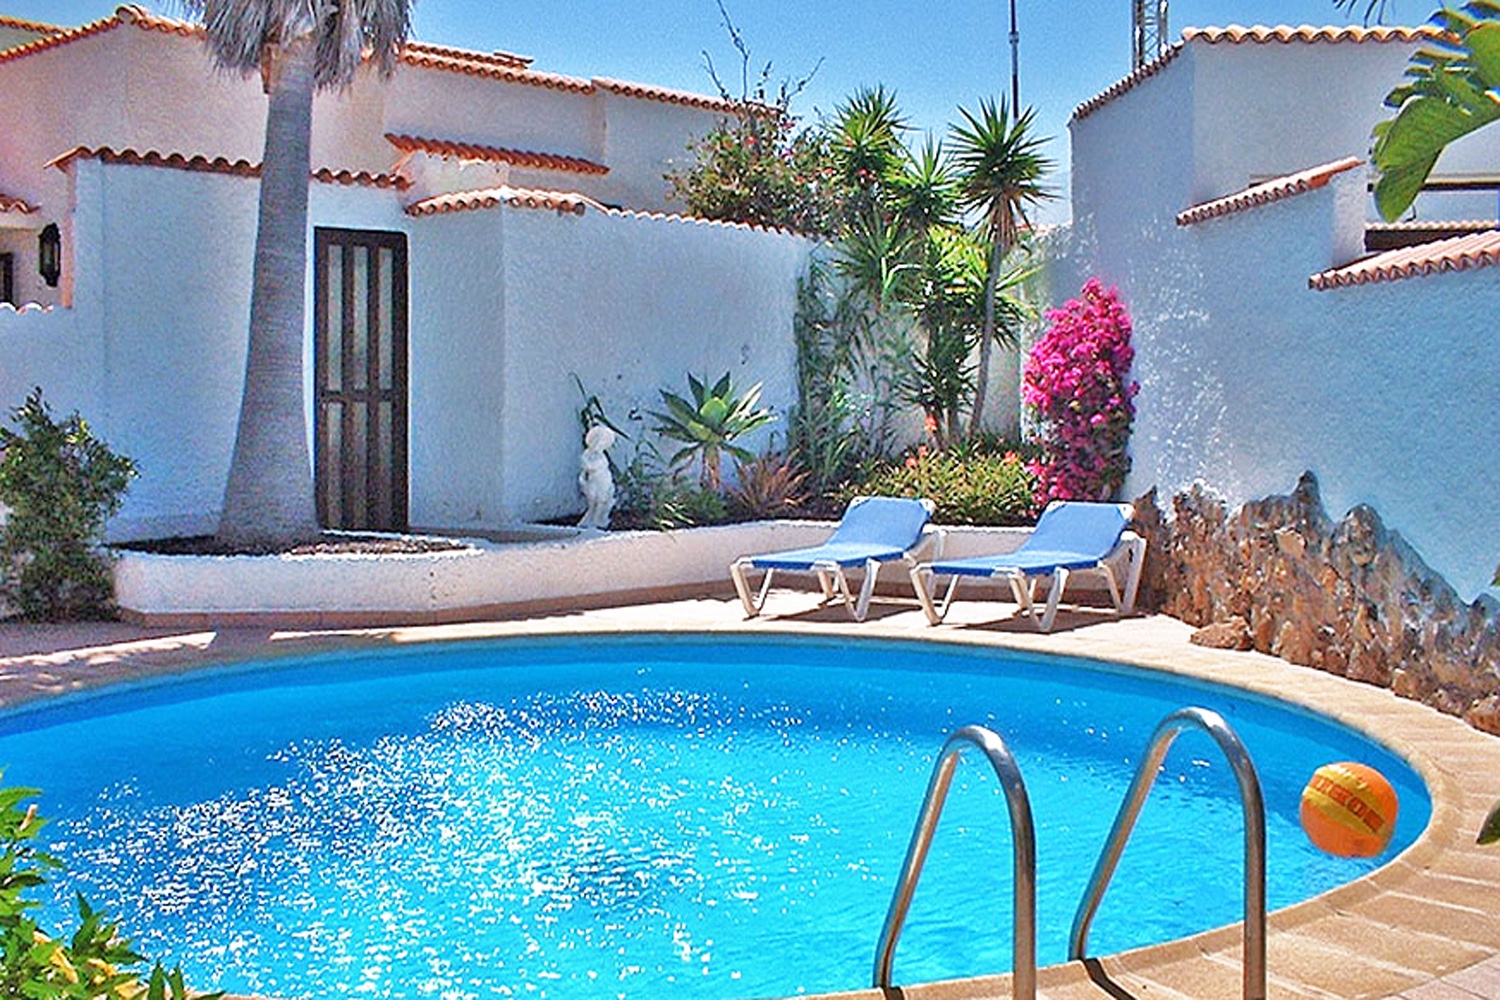 Dom do wynajęcia na południu Teneryfy z prywatnym basenem w pobliżu plaży Porís de Abona.